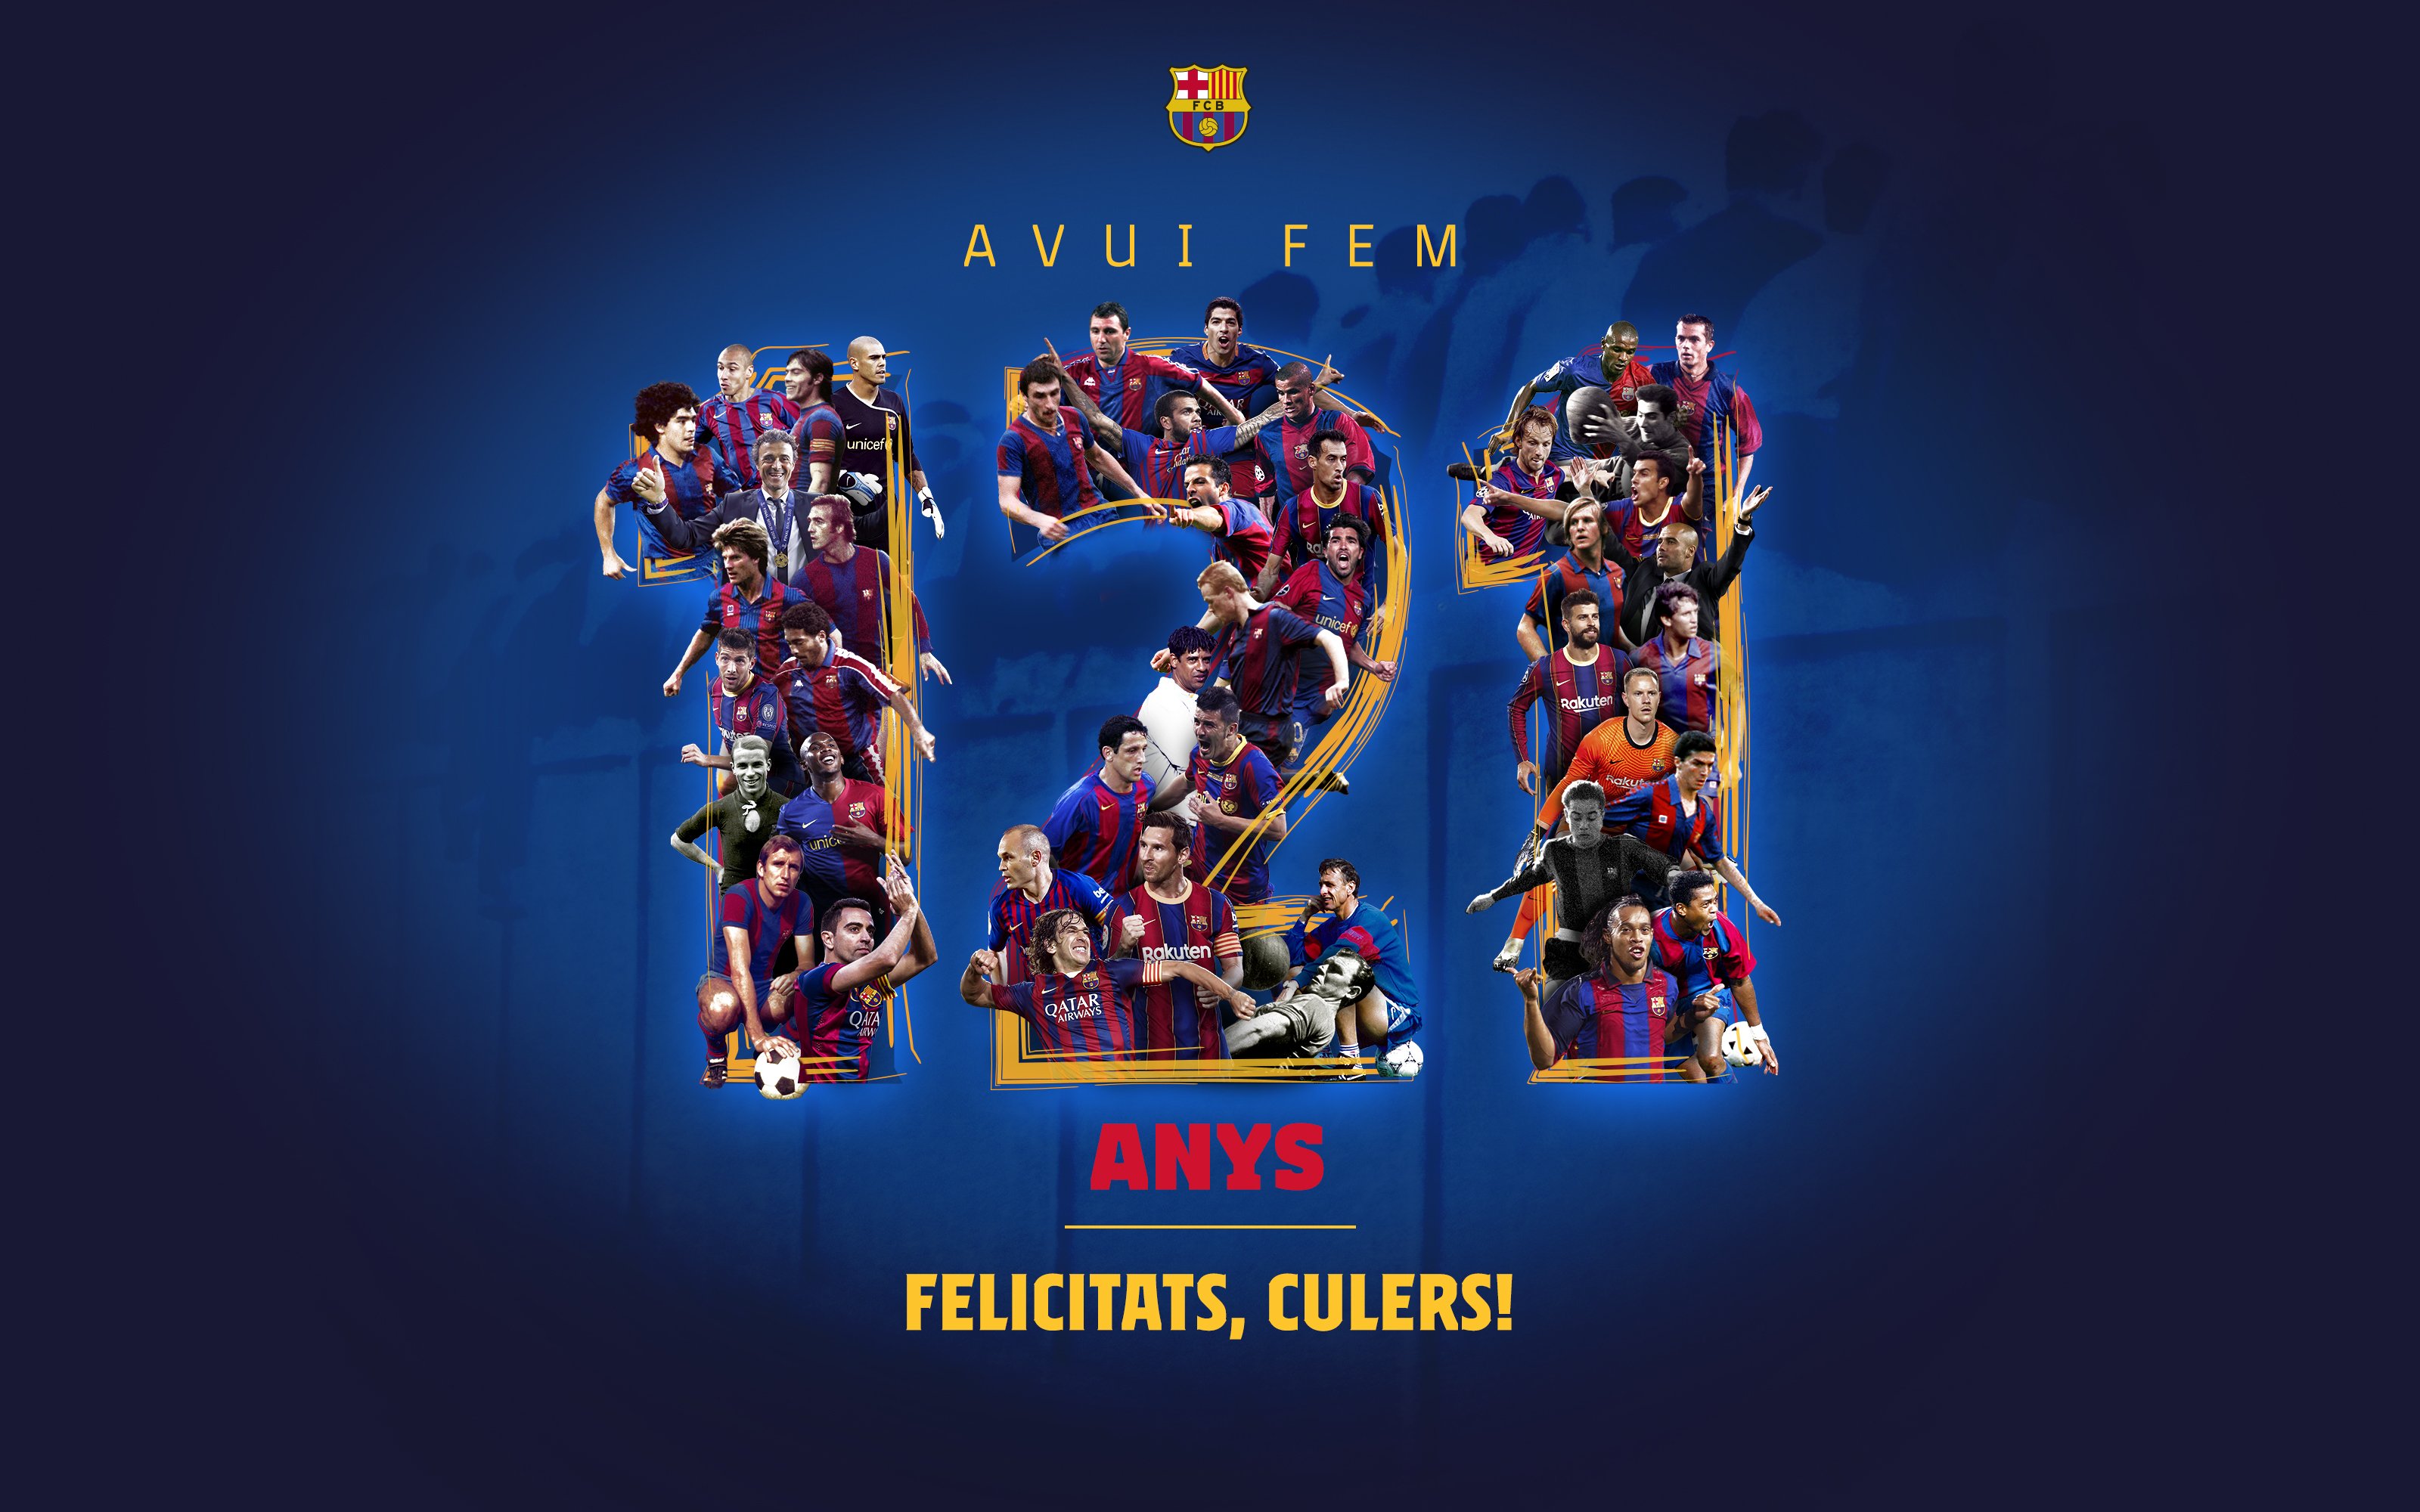 Polèmica pels 121 anys d'història del Barça: exclosos futbolistes històrics